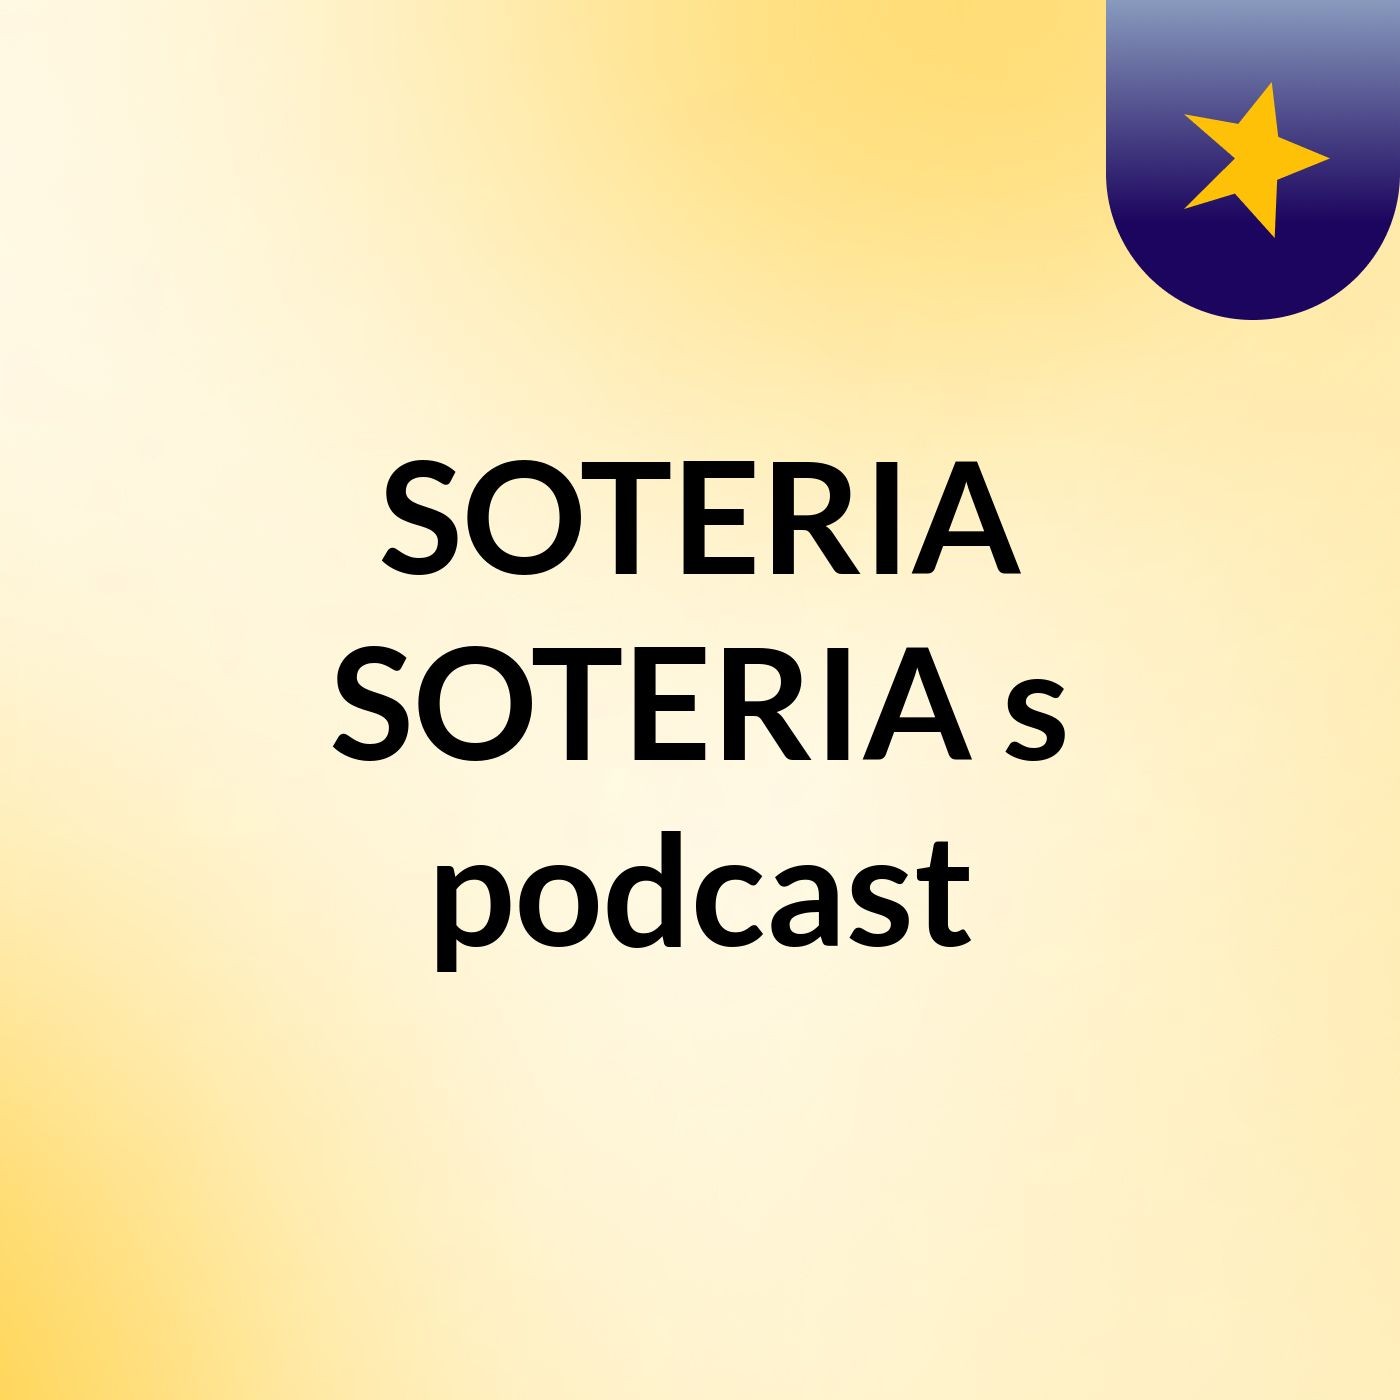 SOTERIA SOTERIA's podcast